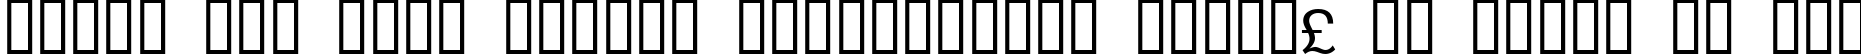 Пример написания шрифтом WP TypographicSymbols текста на русском